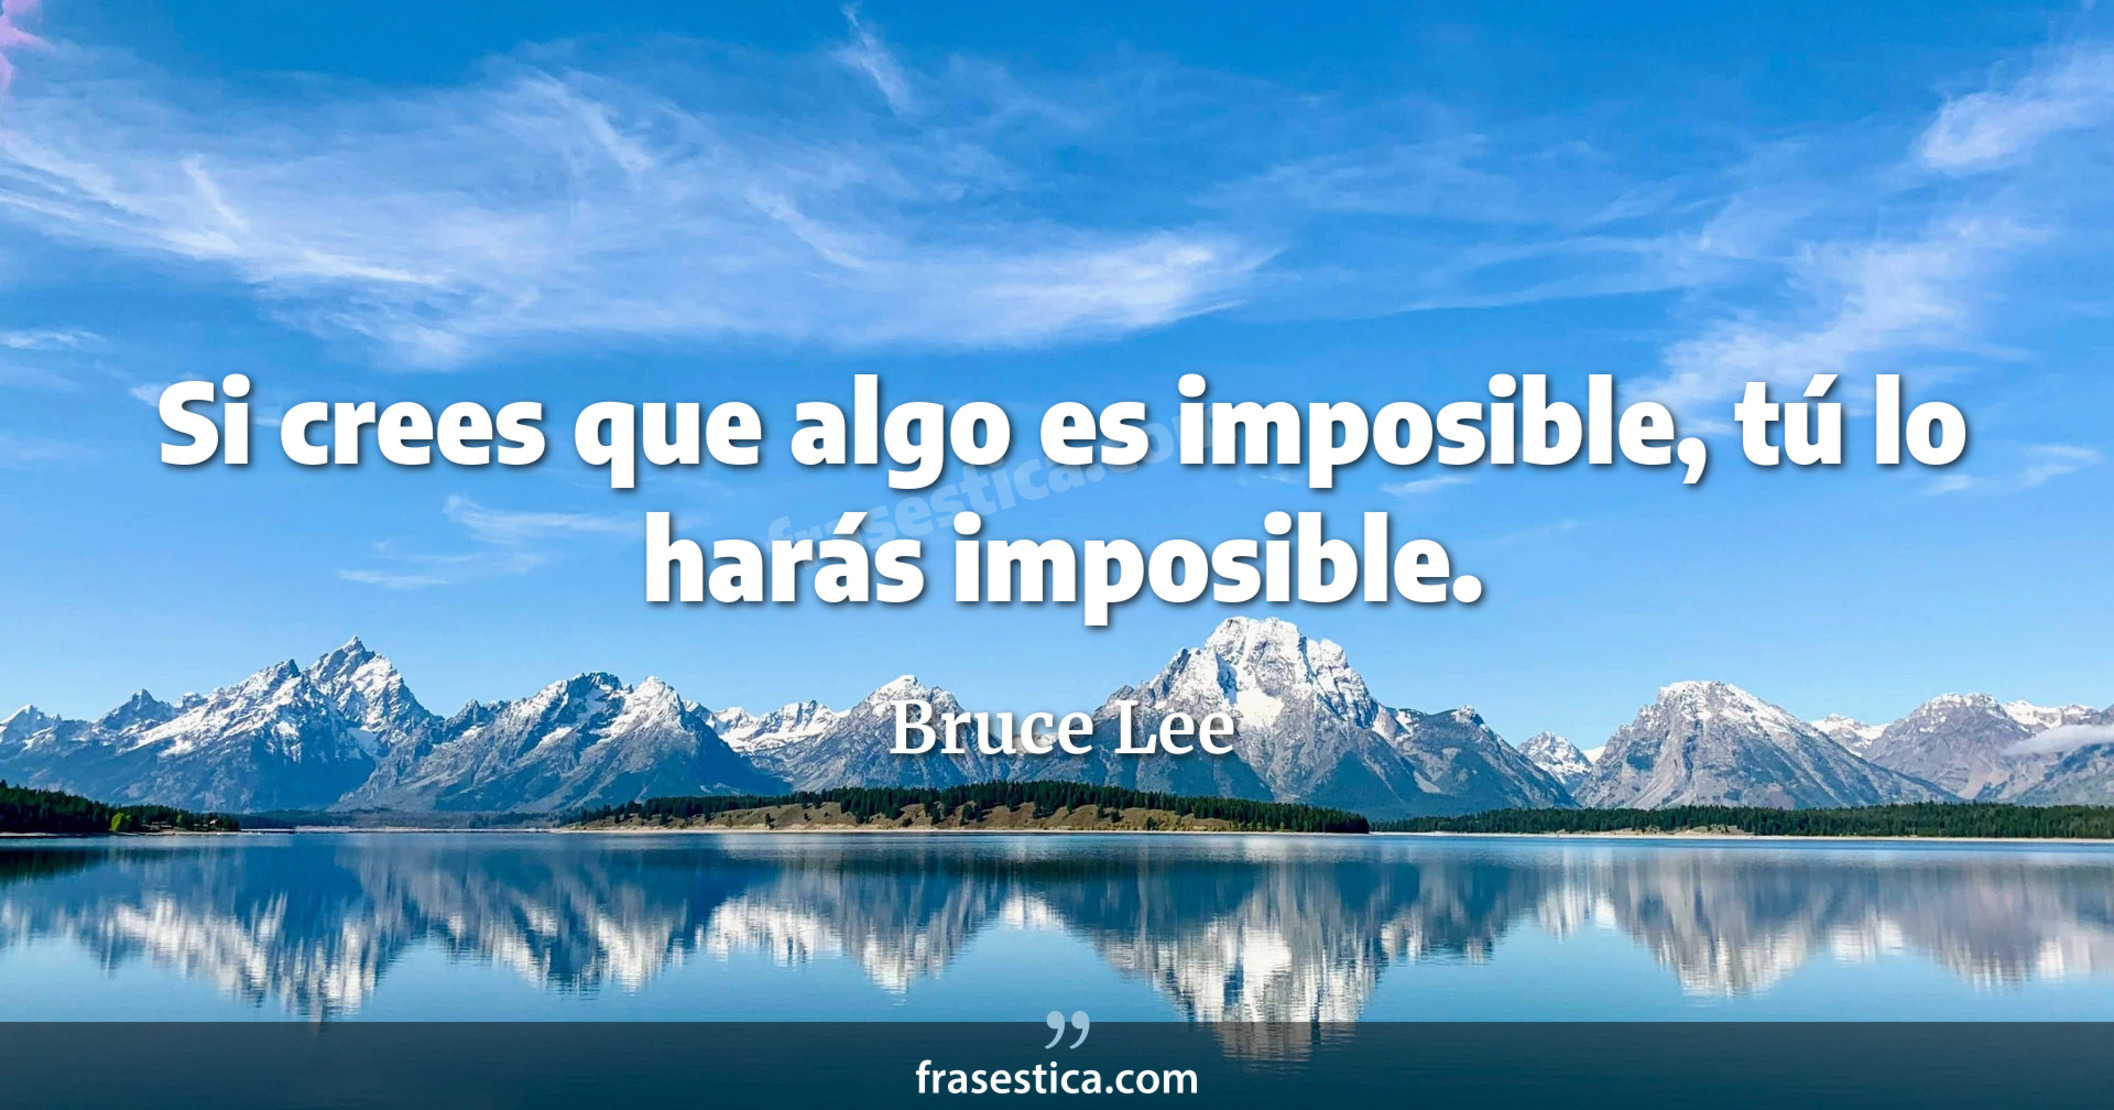 Si crees que algo es imposible, tú lo harás imposible. - Bruce Lee